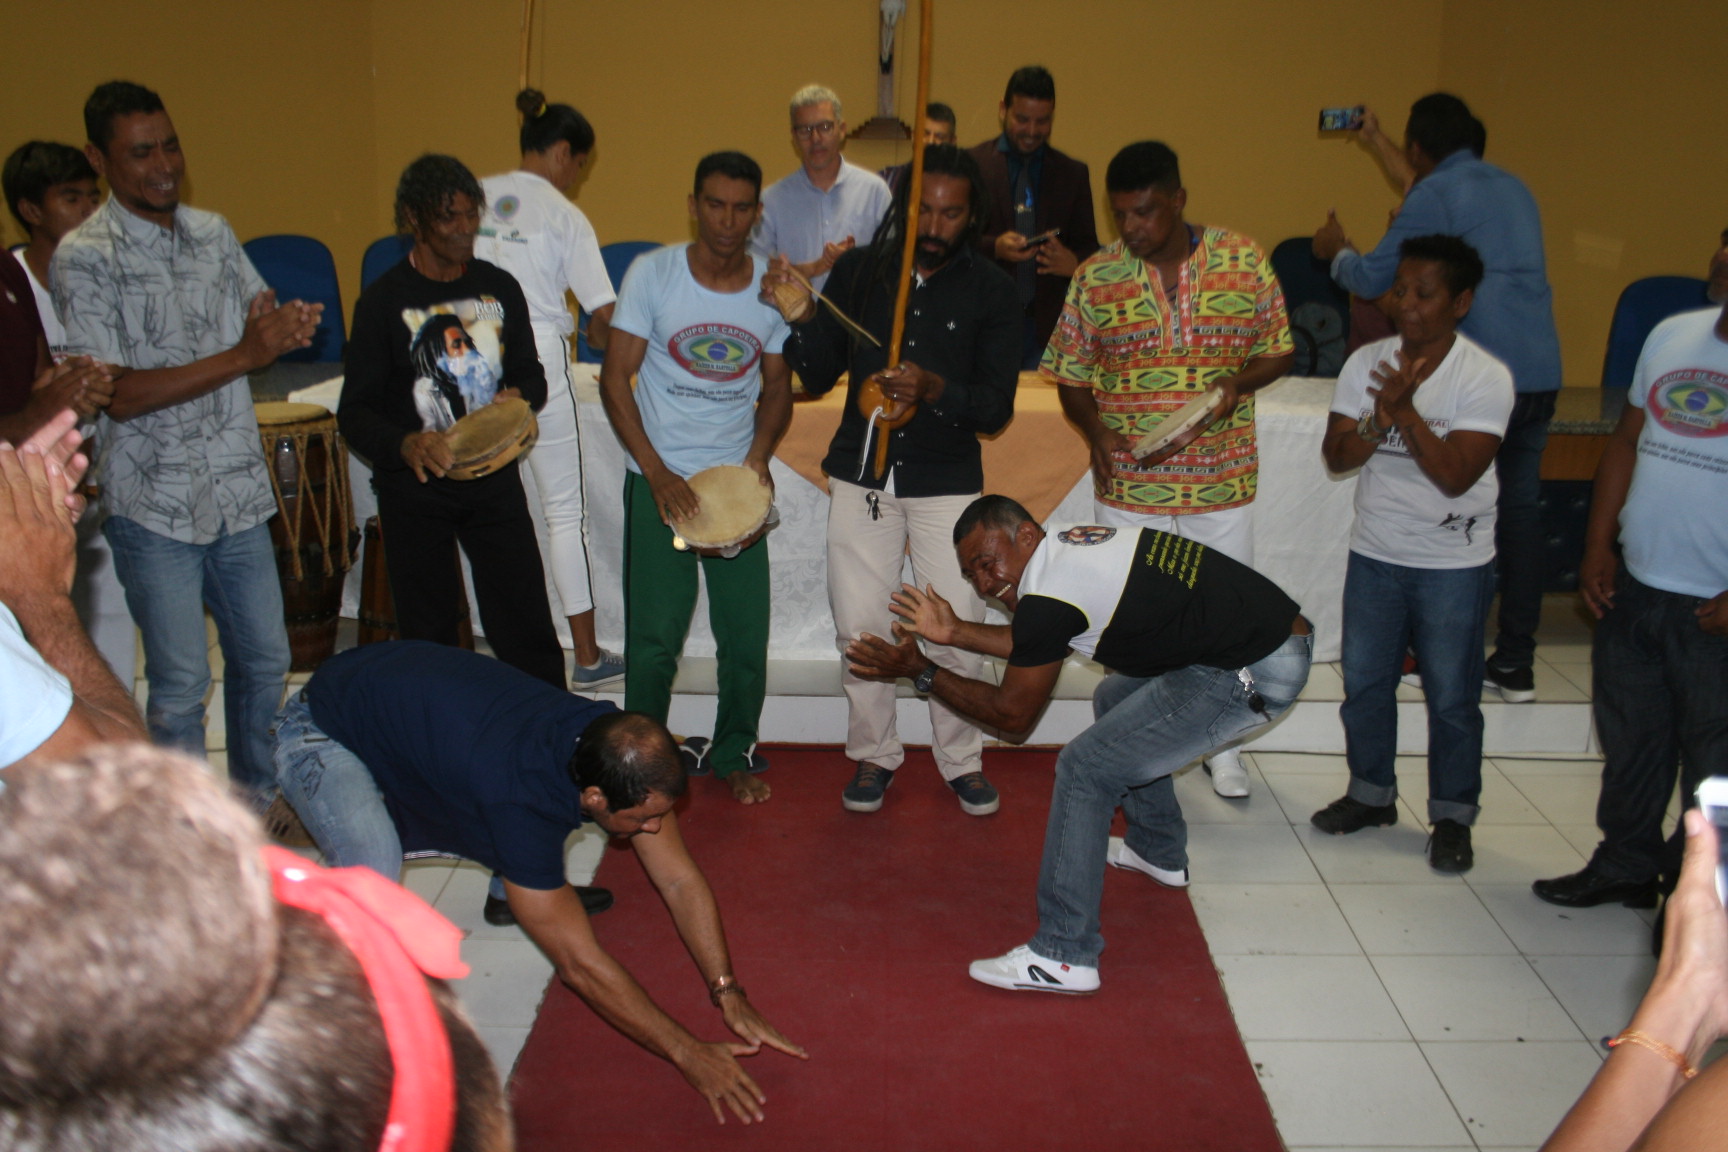 Câmara de Vereadores homenageia capoeiristas juazeirenses